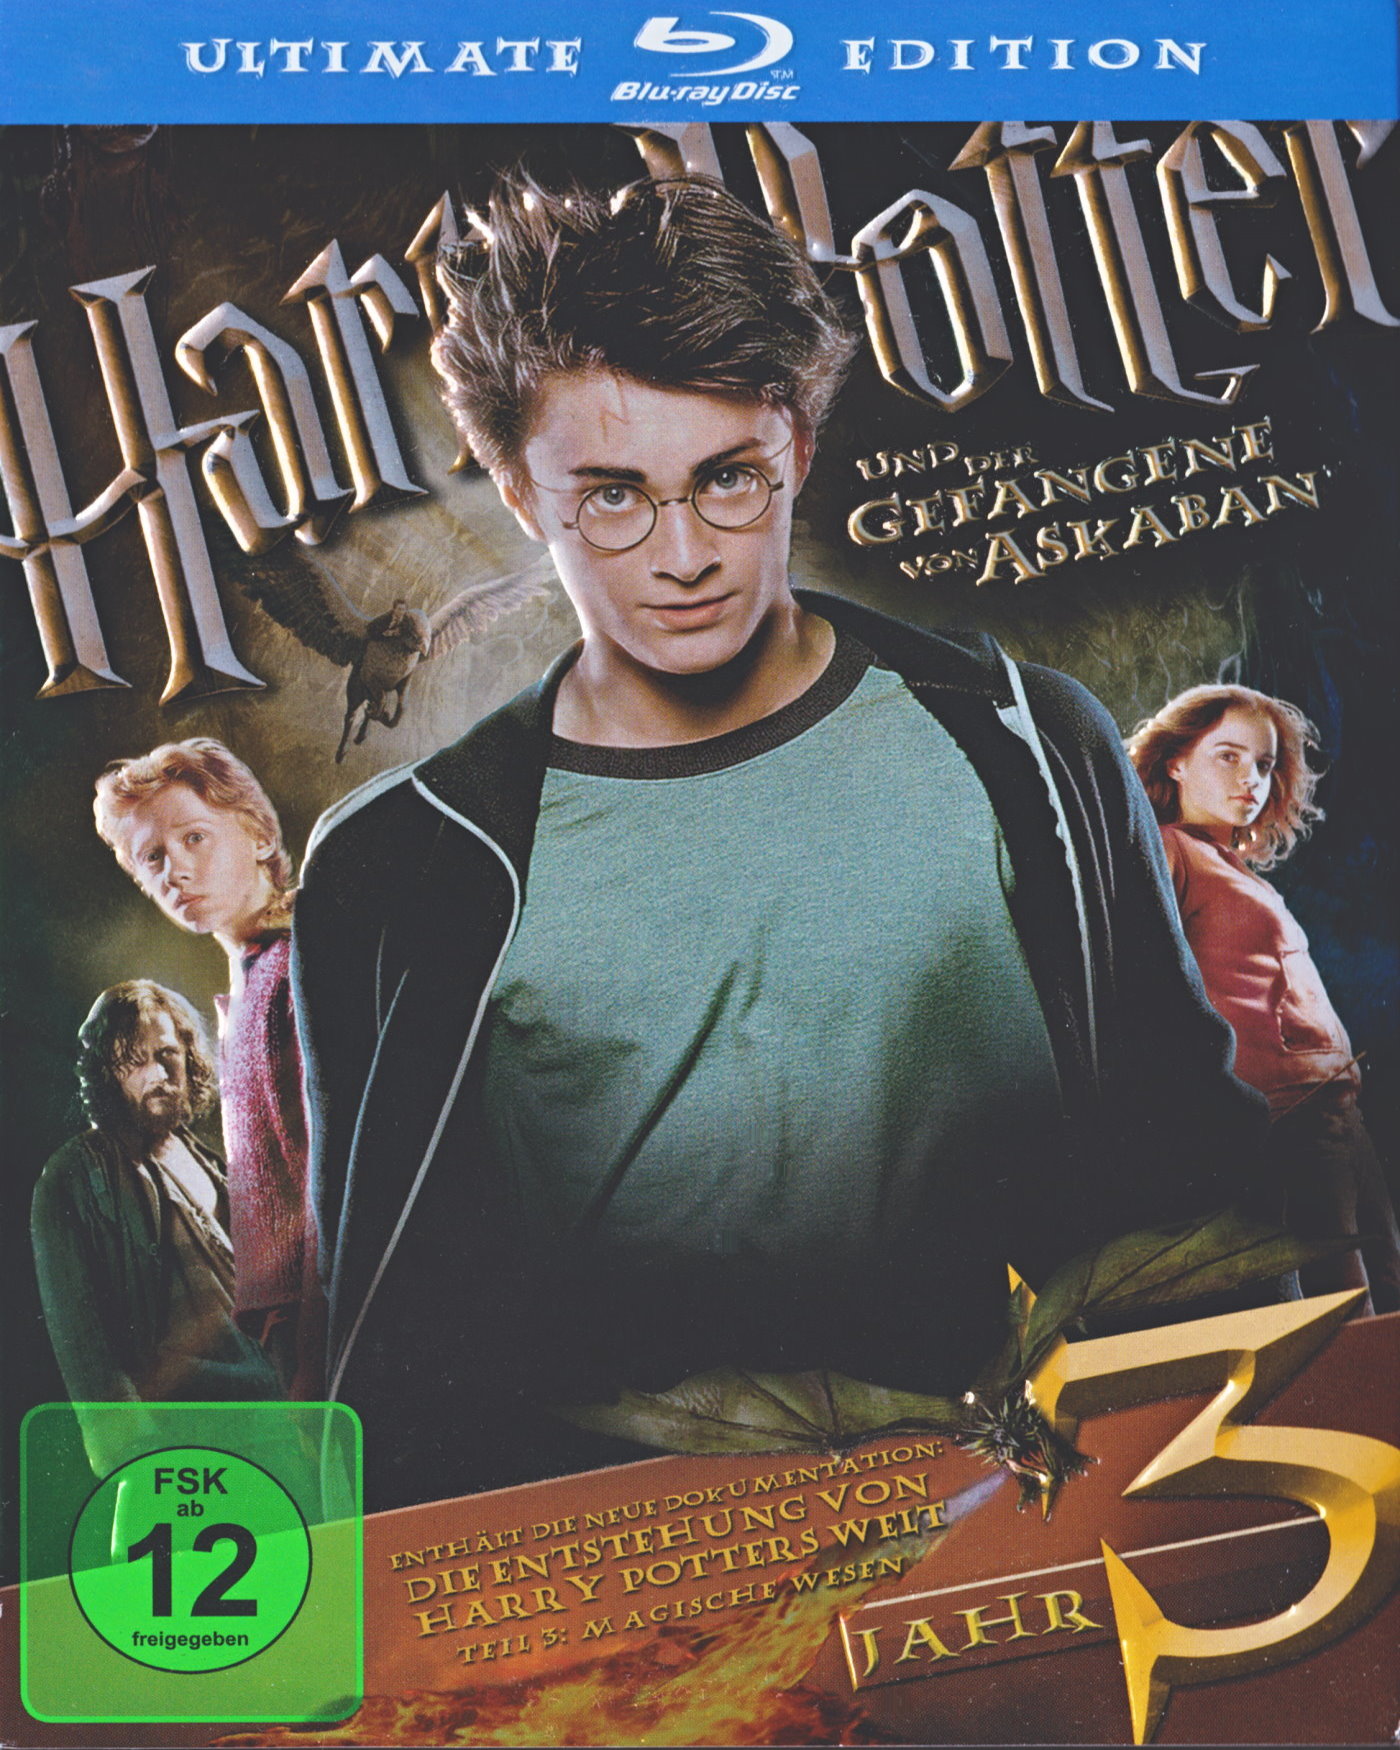 Cover - Harry Potter und der Gefangene von Askaban.jpg